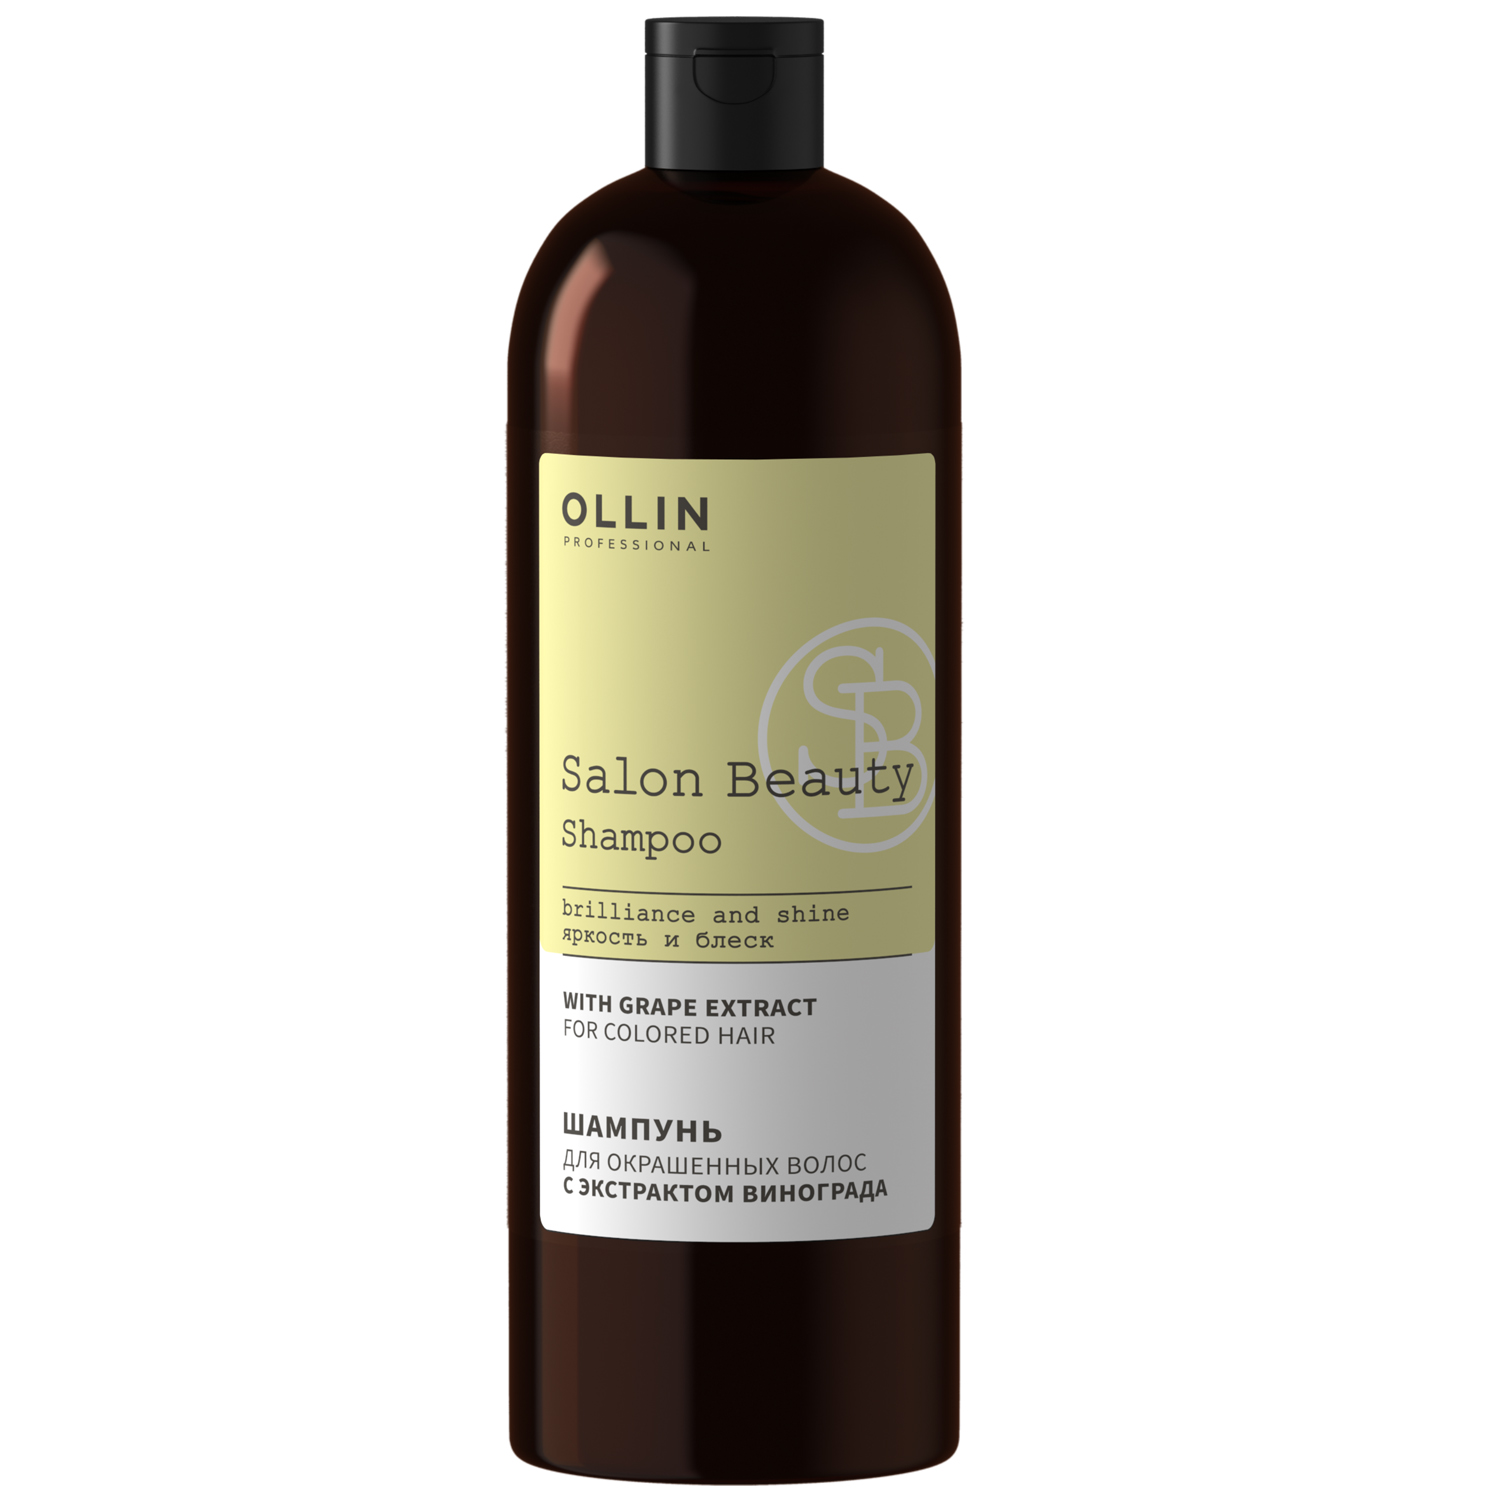 Ollin Professional Шампунь для окрашенных волос с экстрактом винограда, 1000 мл (Ollin Professional, Salon Beauty)